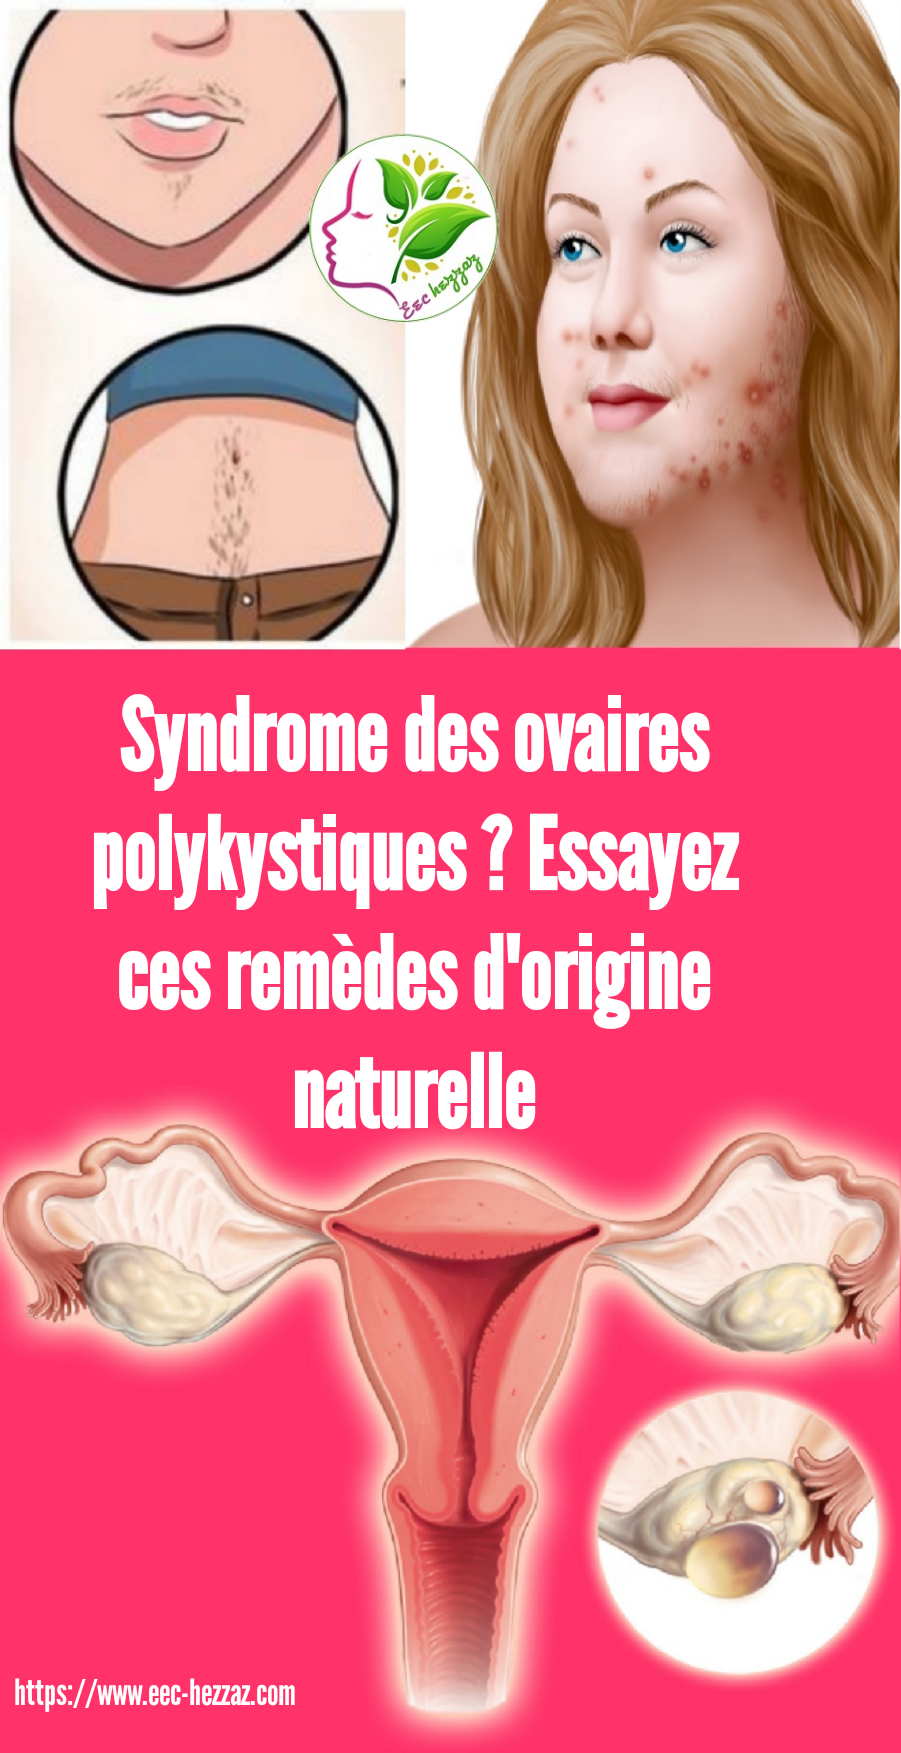 Syndrome des ovaires polykystiques ? Essayez ces remèdes d'origine naturelle